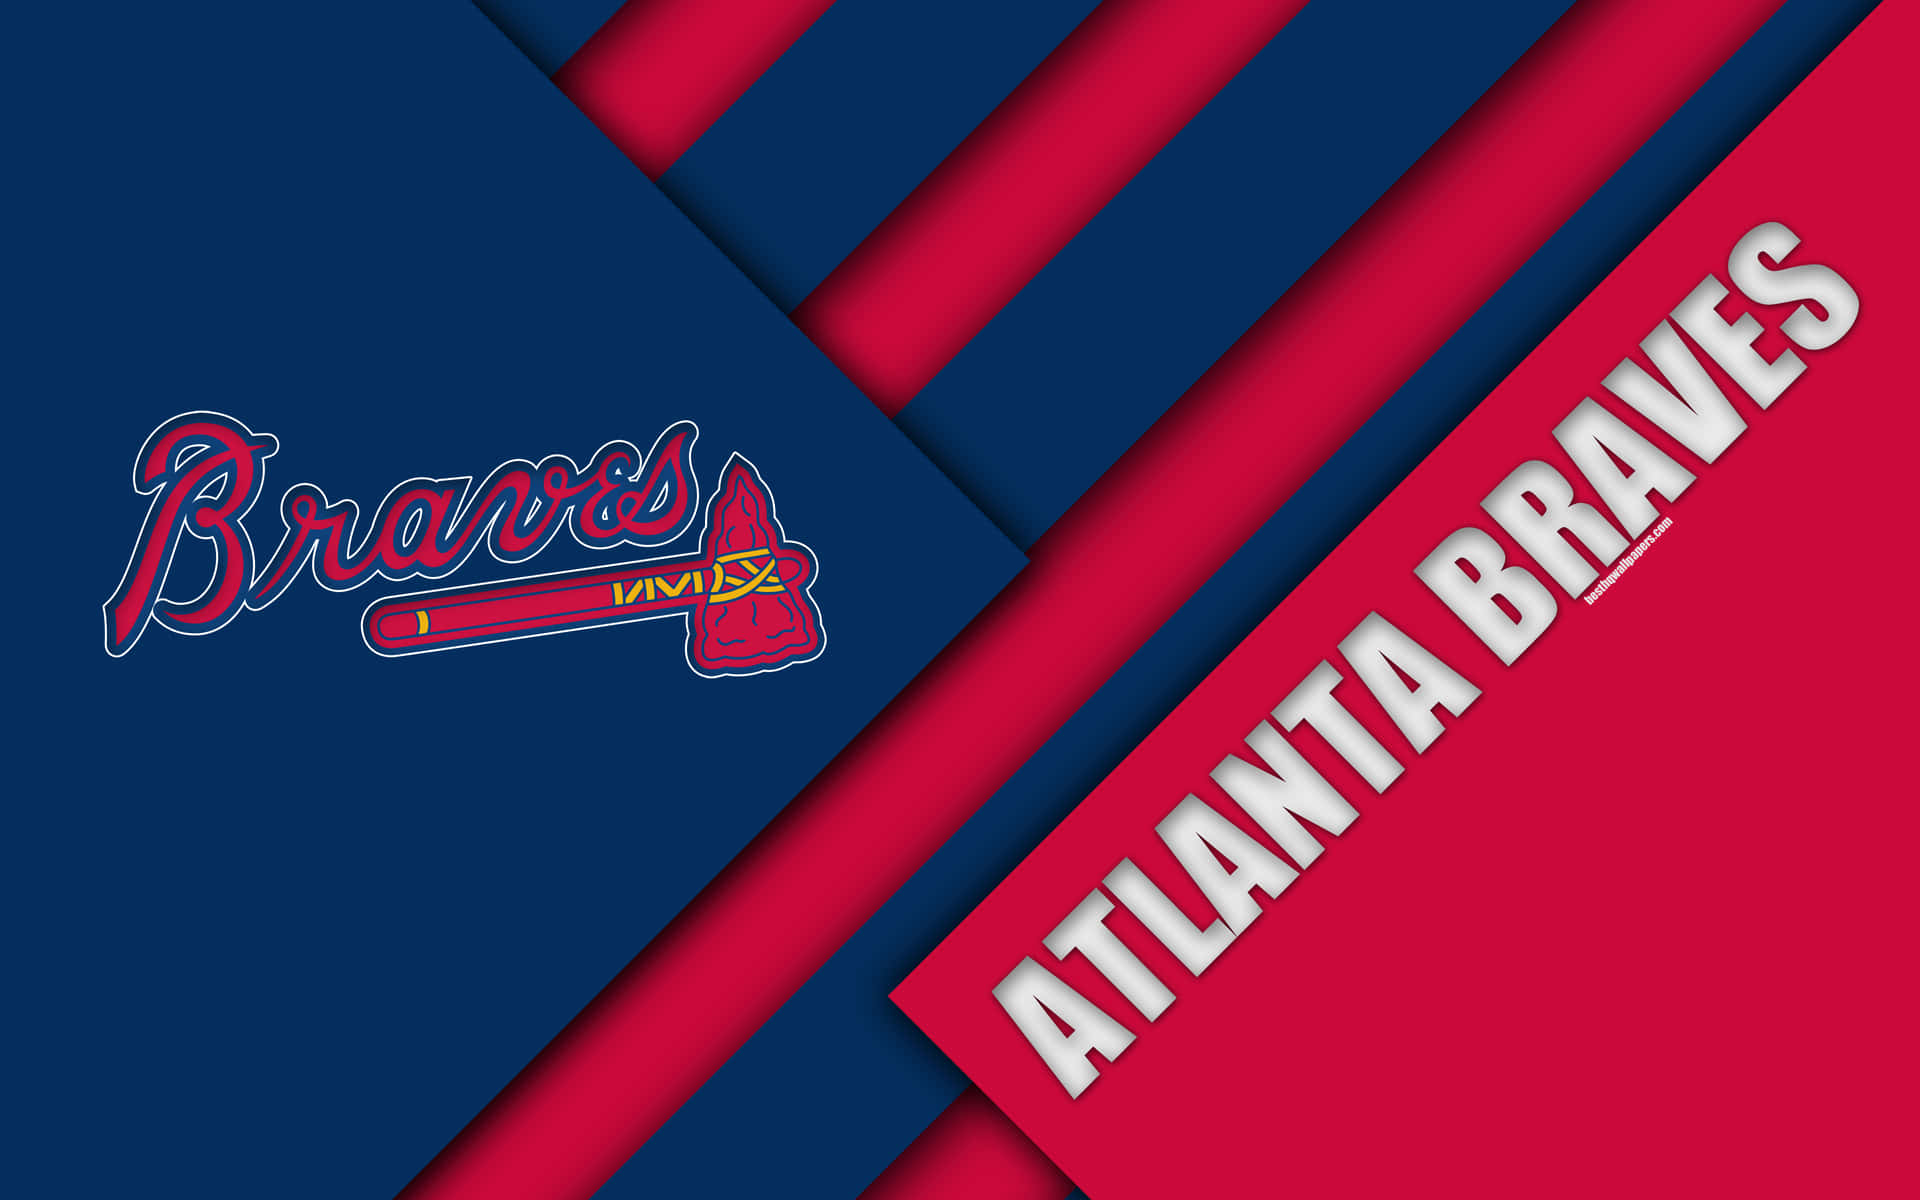 Zeigensie Ihre Unterstützung Für Die Atlanta Braves Mit Diesem Wallpaper Des Teamlogos. Wallpaper